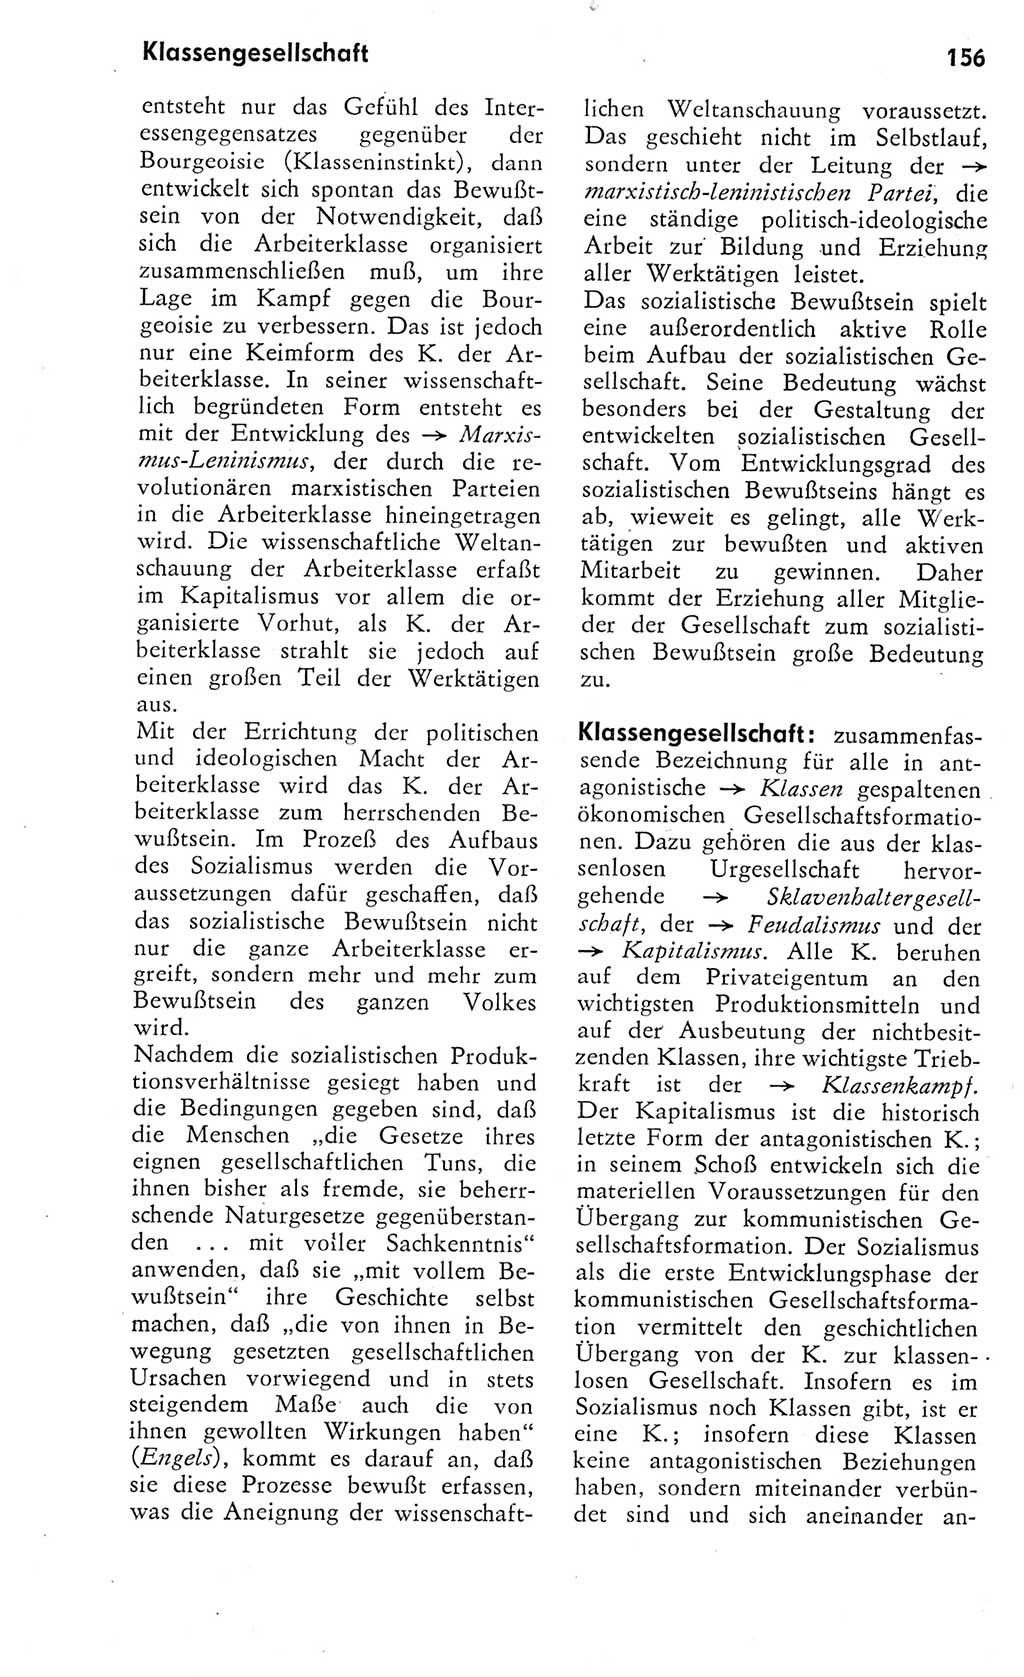 Kleines Wörterbuch der marxistisch-leninistischen Philosophie [Deutsche Demokratische Republik (DDR)] 1975, Seite 156 (Kl. Wb. ML Phil. DDR 1975, S. 156)